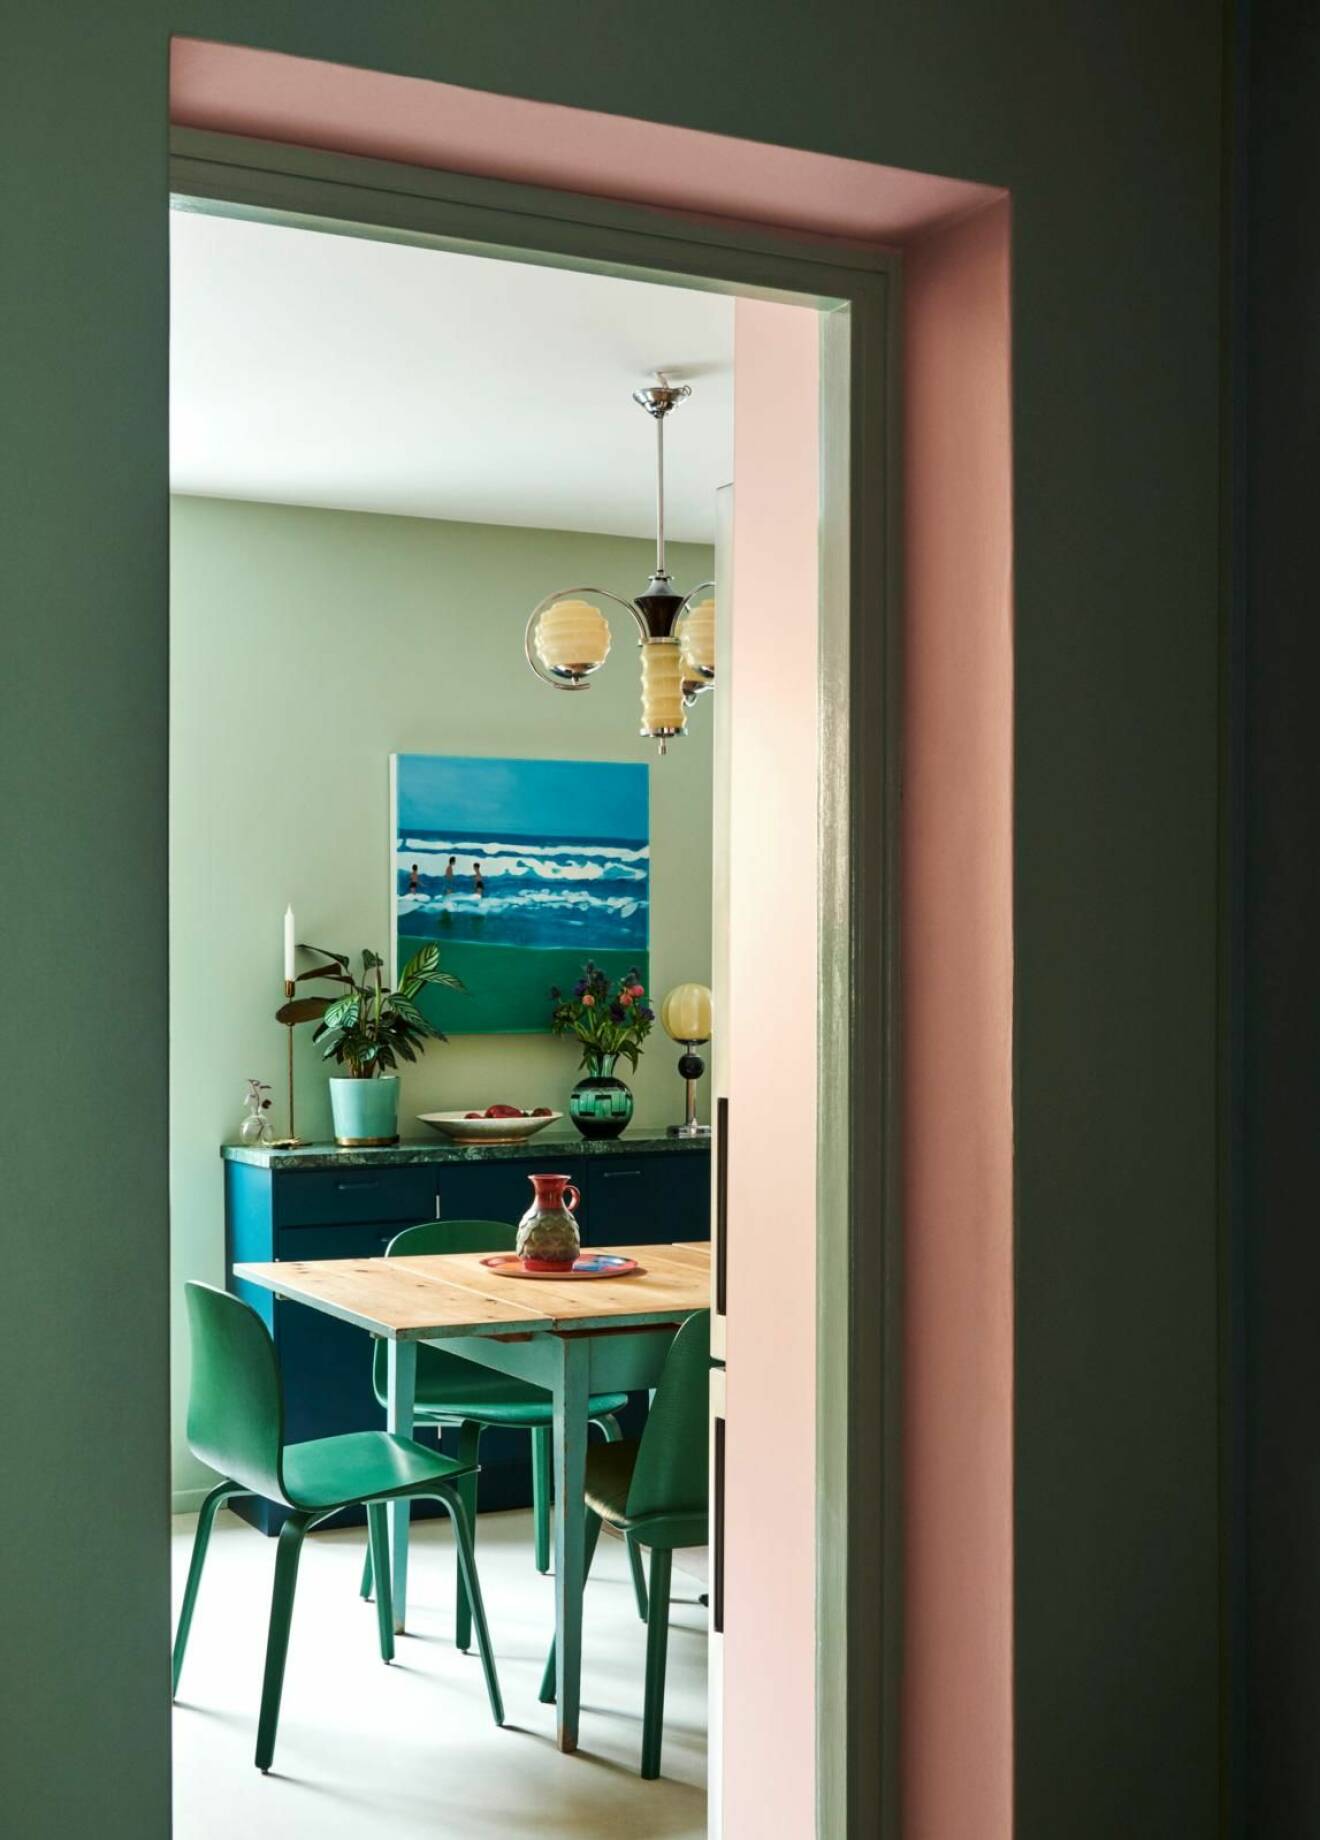 Kika in hos Emma och Dennis lekfulla och färgstarka lägenhet inred med pastellfärger på Södermalm, pastellfärger